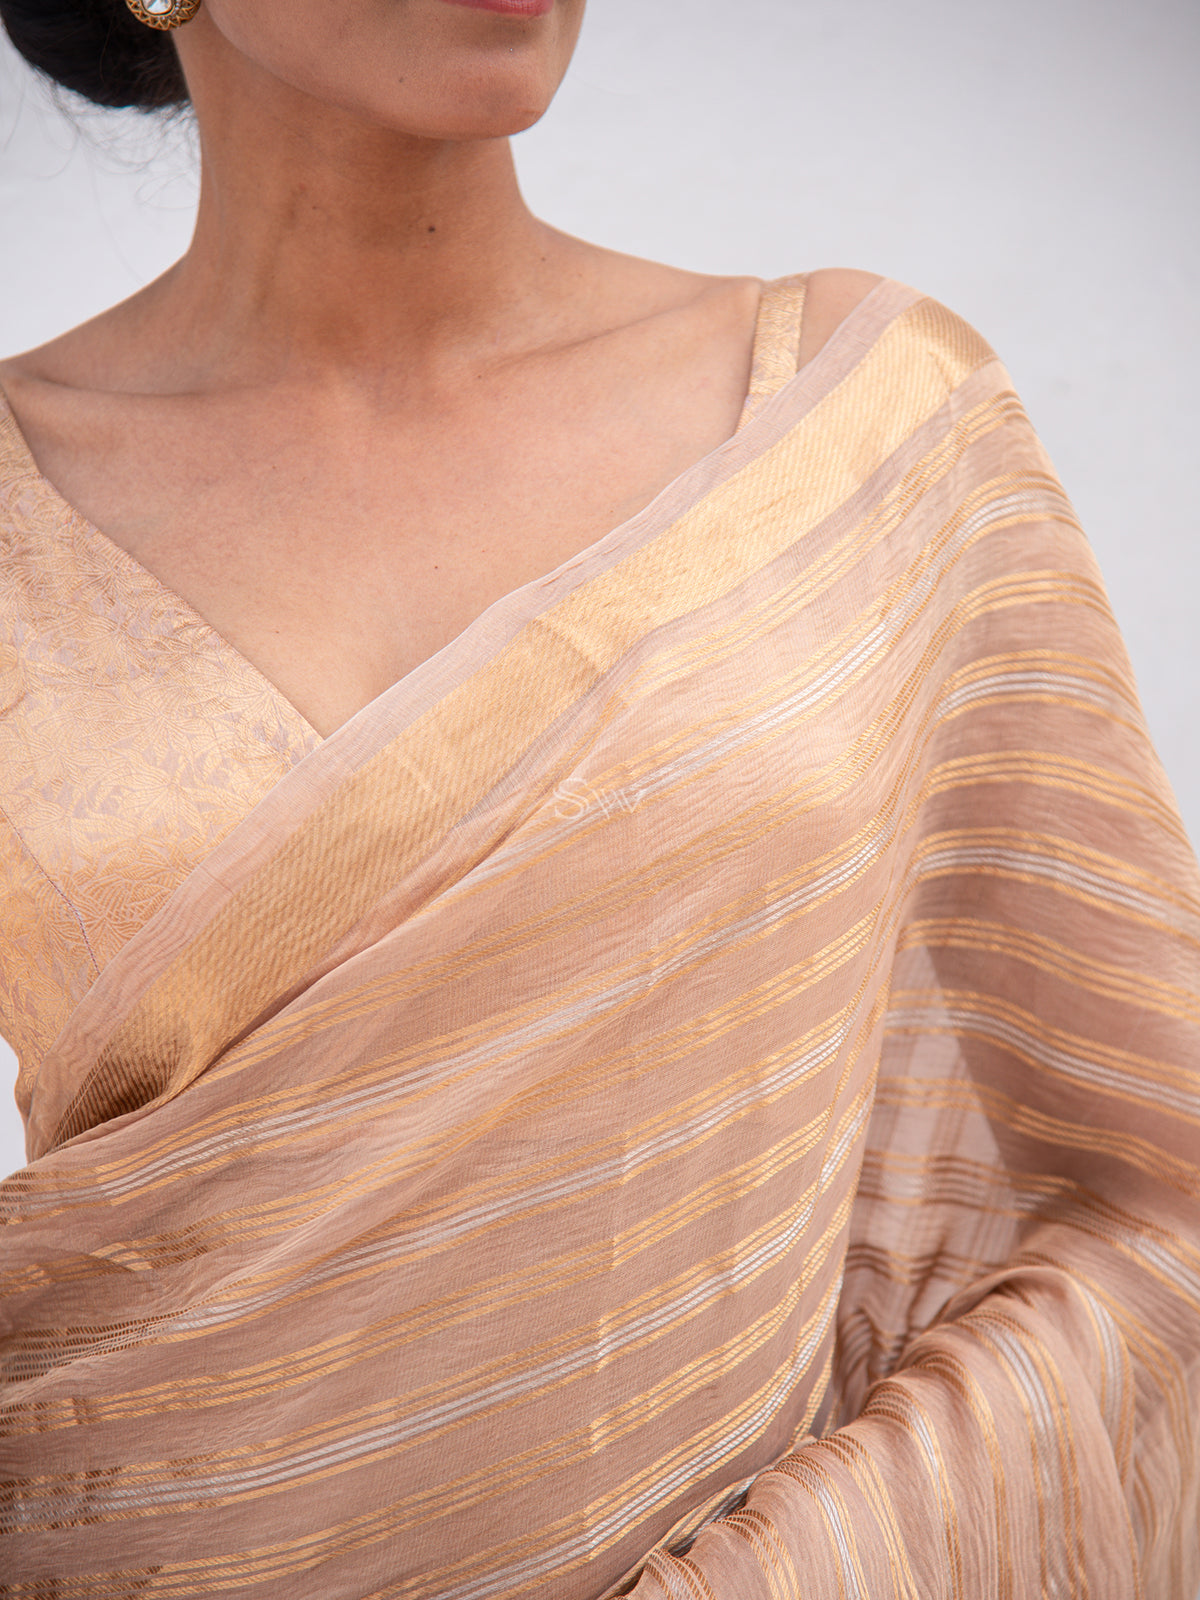 Pastel Brown Tissue Handloom Banarasi Saree - Sacred Weaves